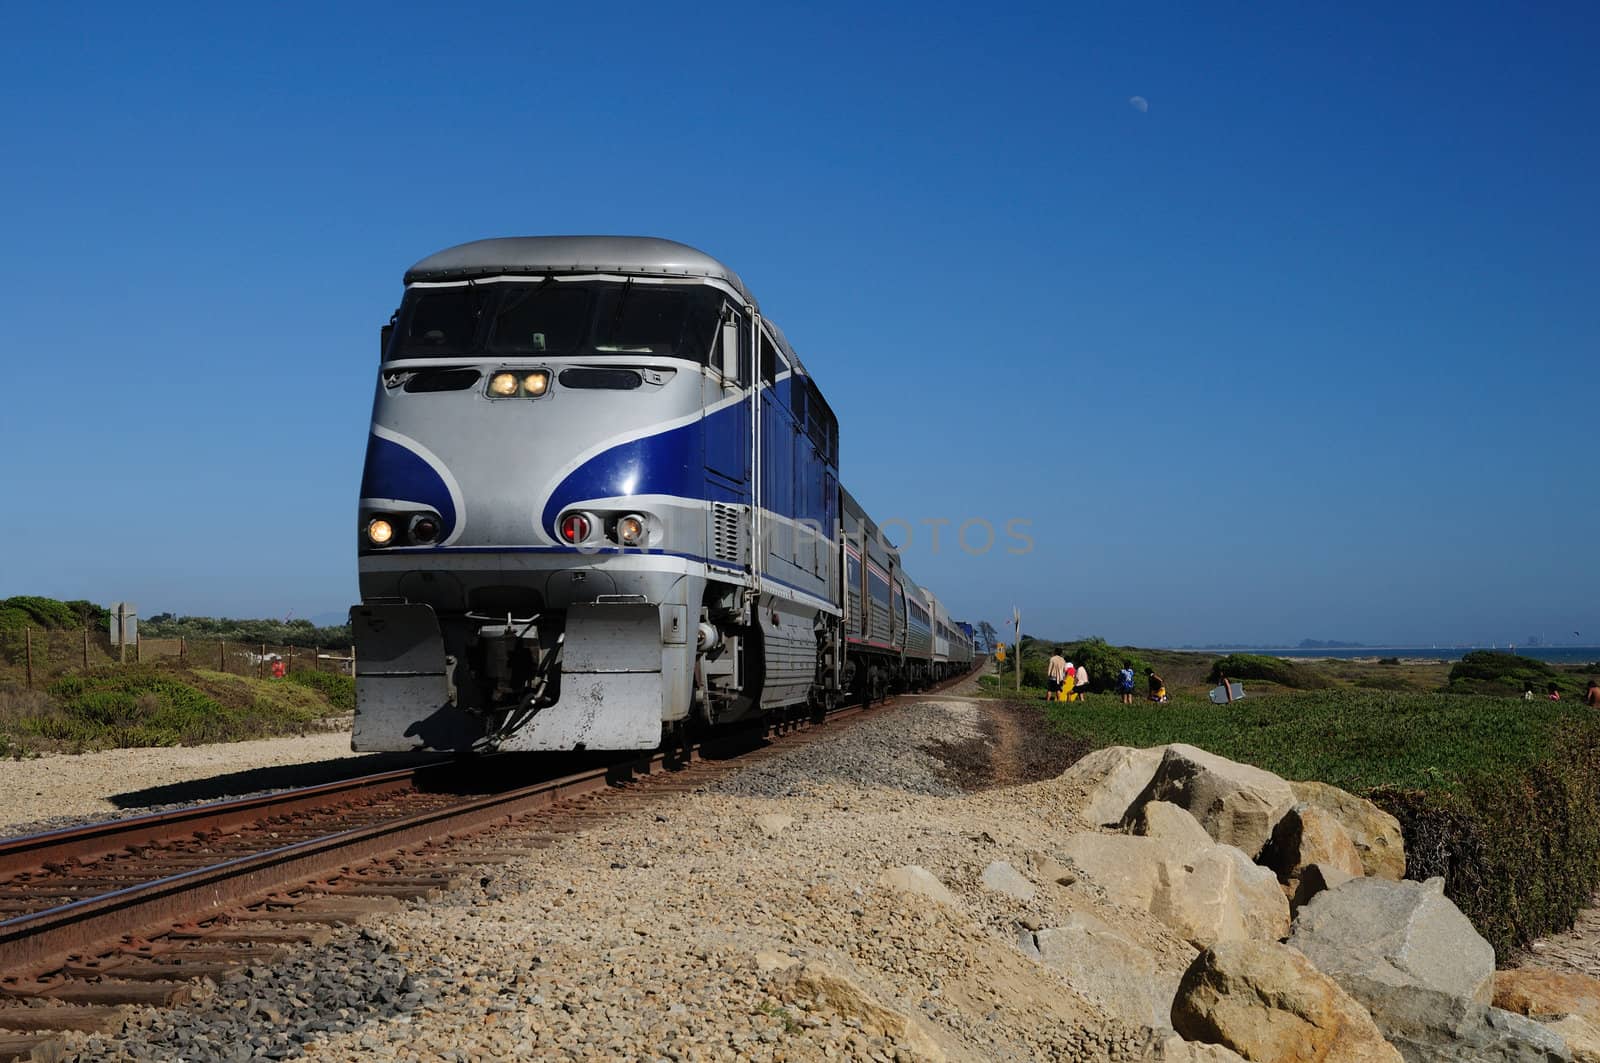 train rushes along tracks on the California coast